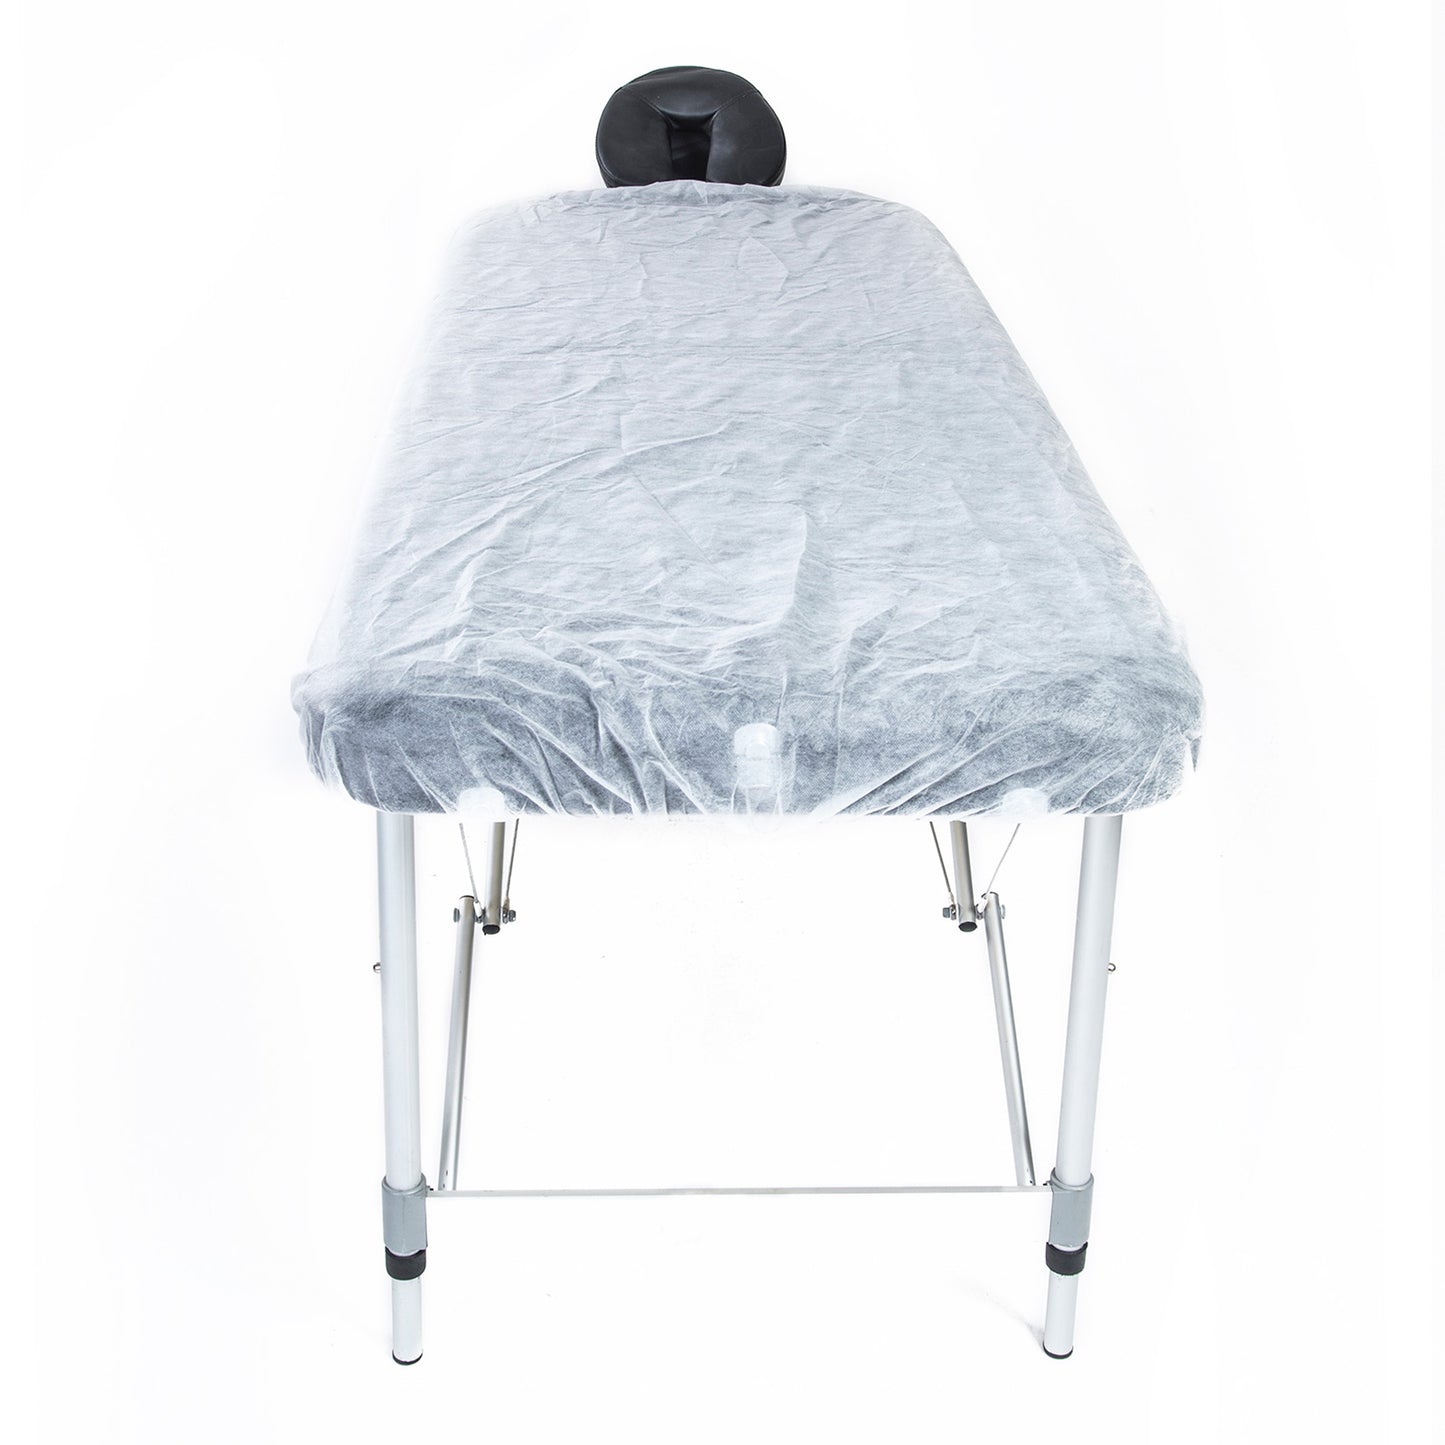 15pcs Disposable Massage Table Sheet Cover 180cm x 75cm - image3